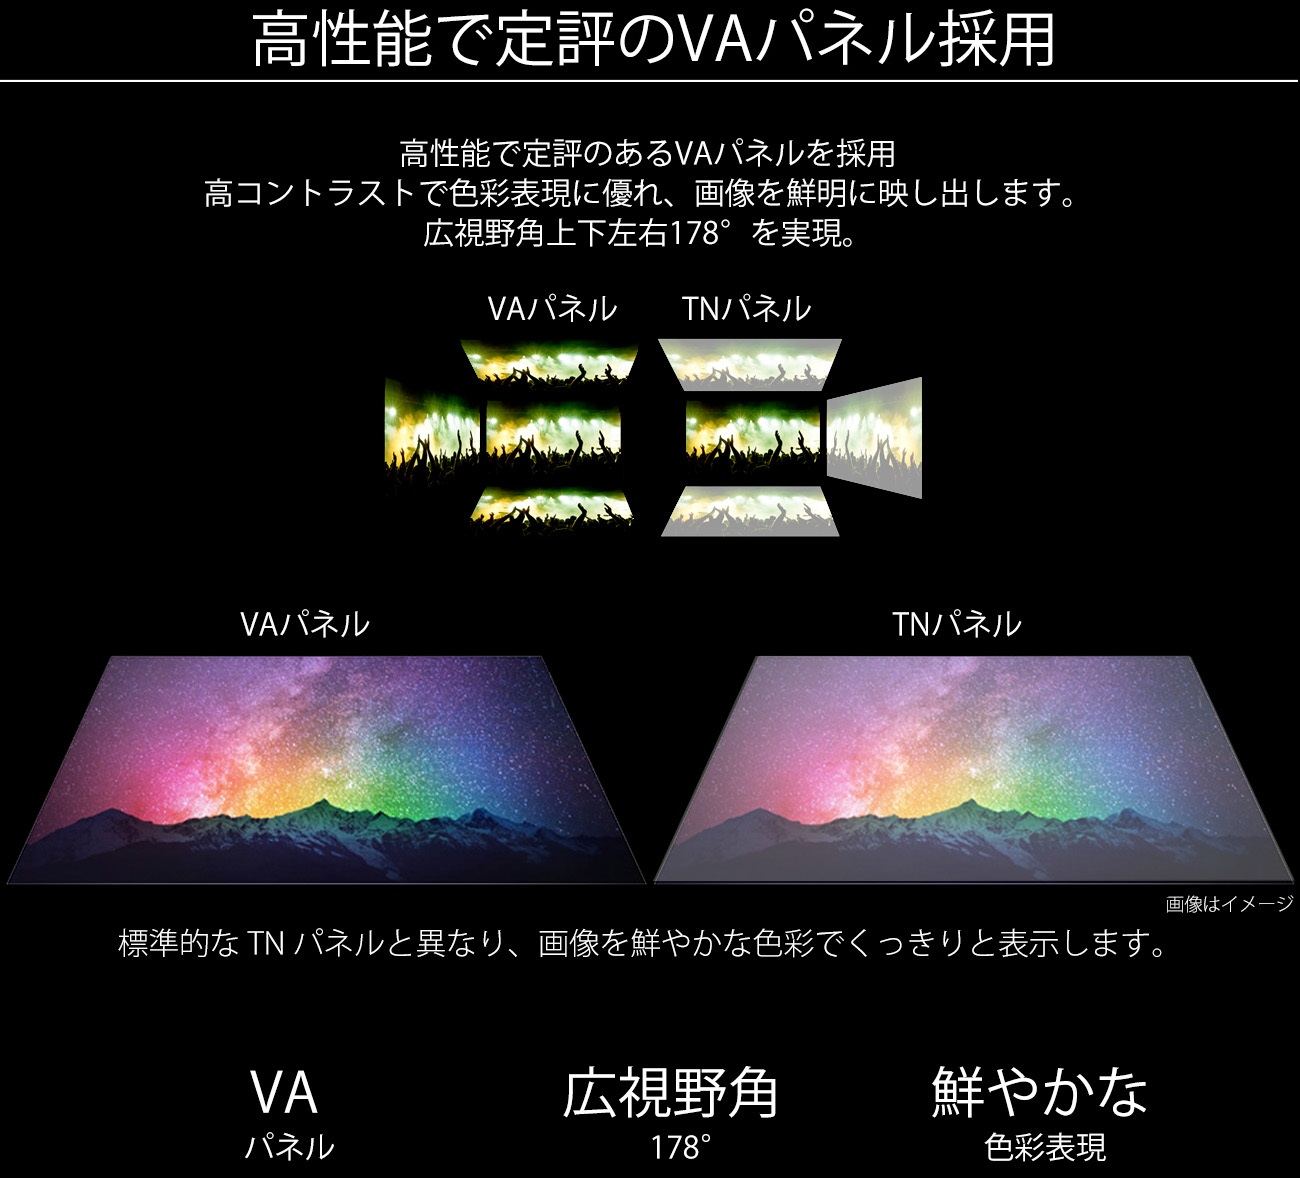 JN-VT4300UHDR 4Kモニター 43型 UHDディスプレイ VAパネル HDMI2.0 HDCP2.2 HDR JAPANNEXT – JAPANNEXT  4K WQHDなど超解像度、ゲーミング、曲面など特殊液晶モニター